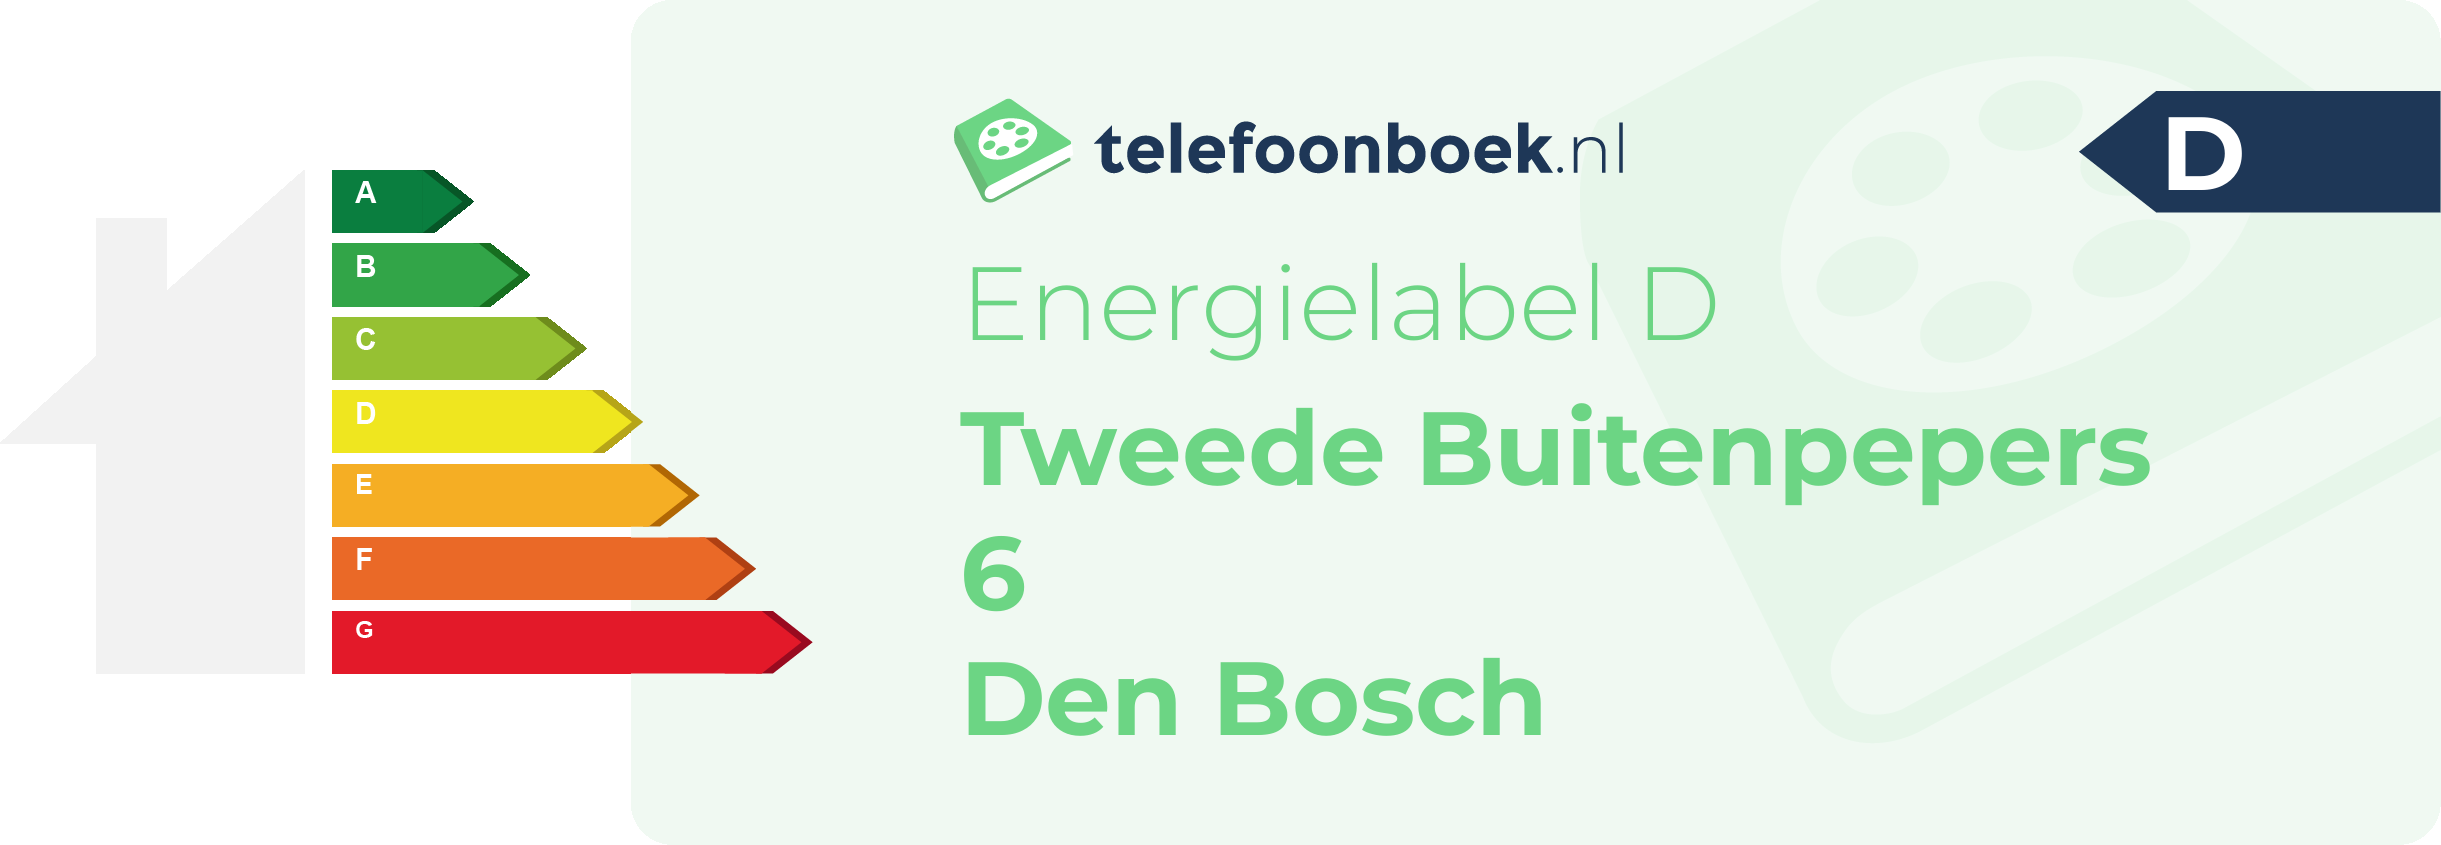 Energielabel Tweede Buitenpepers 6 Den Bosch